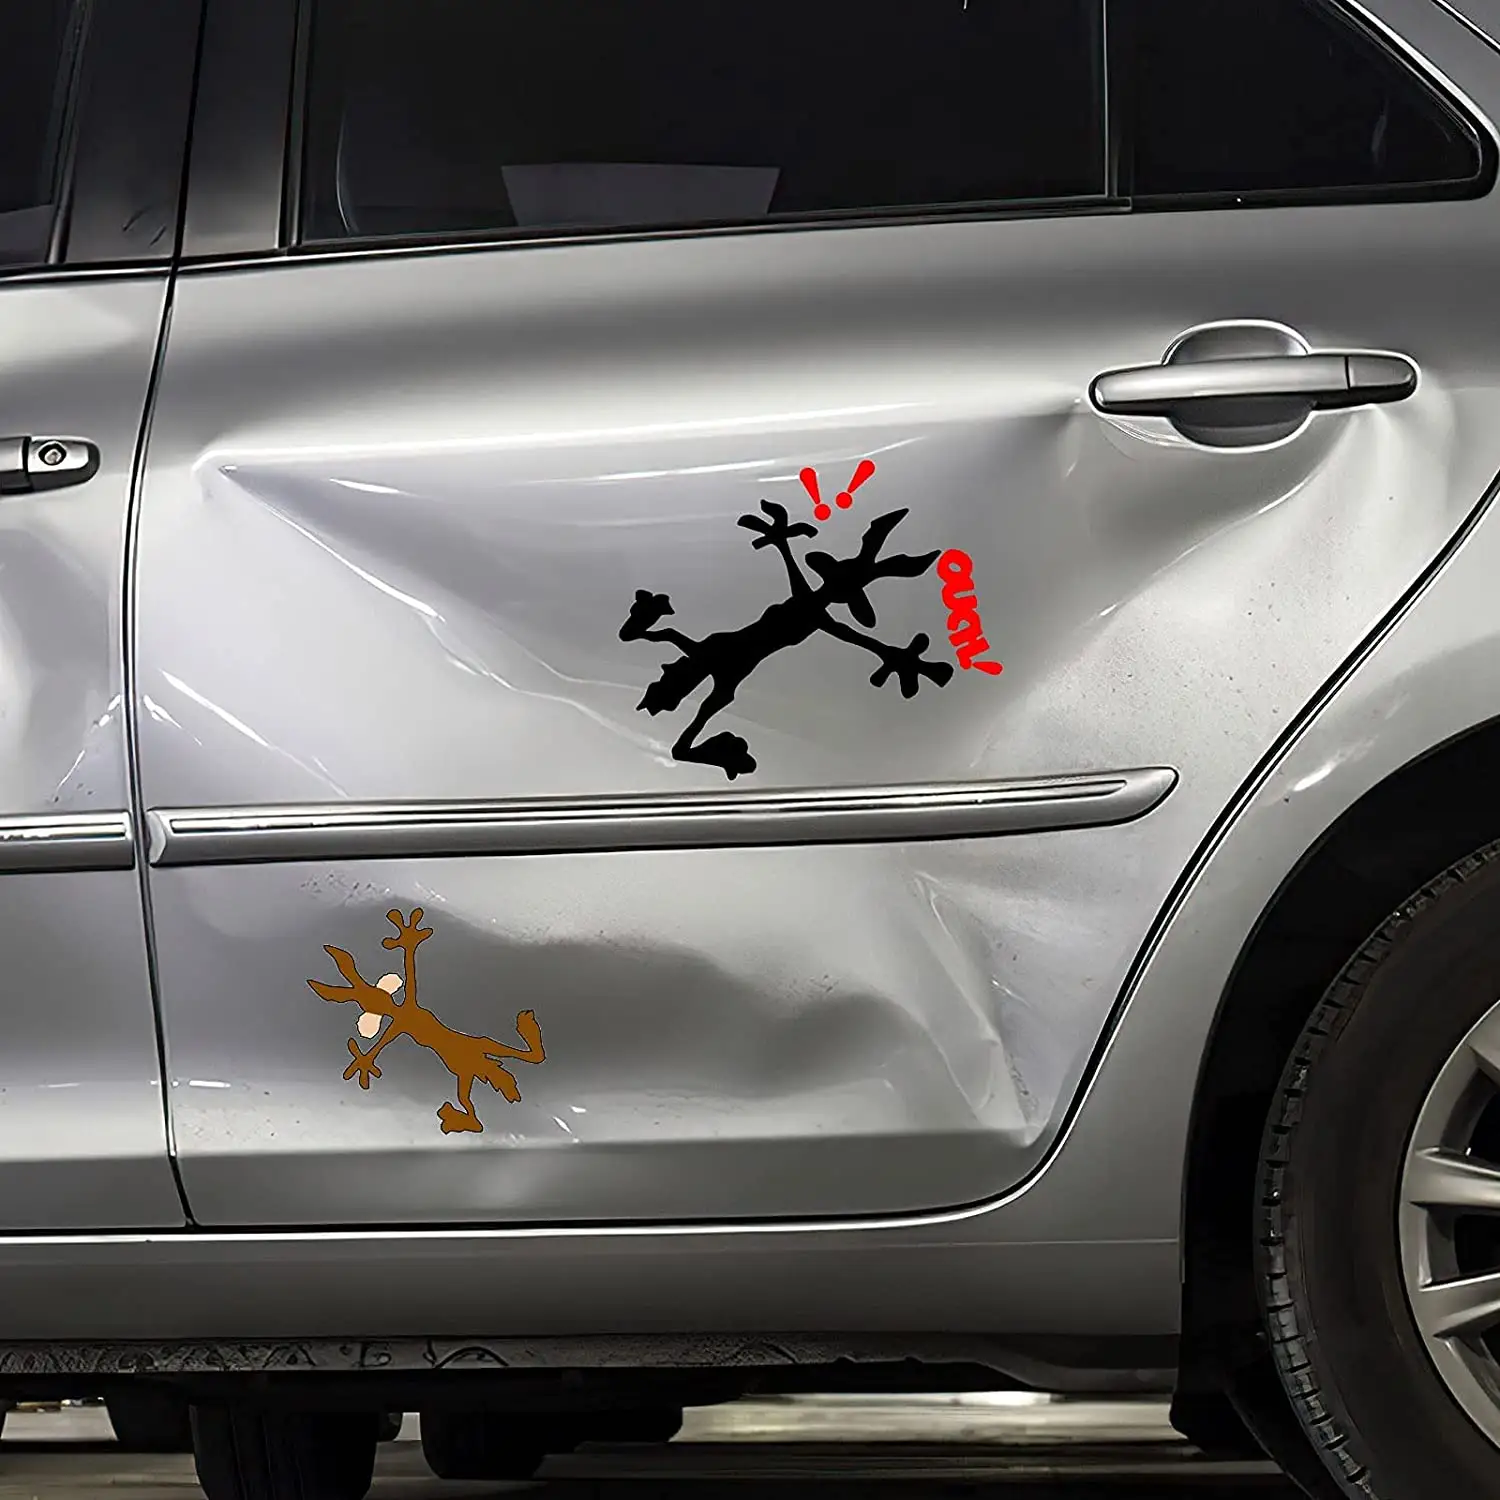 สติกเกอร์ติดรถยนต์ลายไวนิลสุดฮา,รูปลอก Bandaid ติดหน้าต่างกันชนรถยนต์สำหรับประตูรถแล็ปท็อป Coyote Splat ลายการ์ตูน